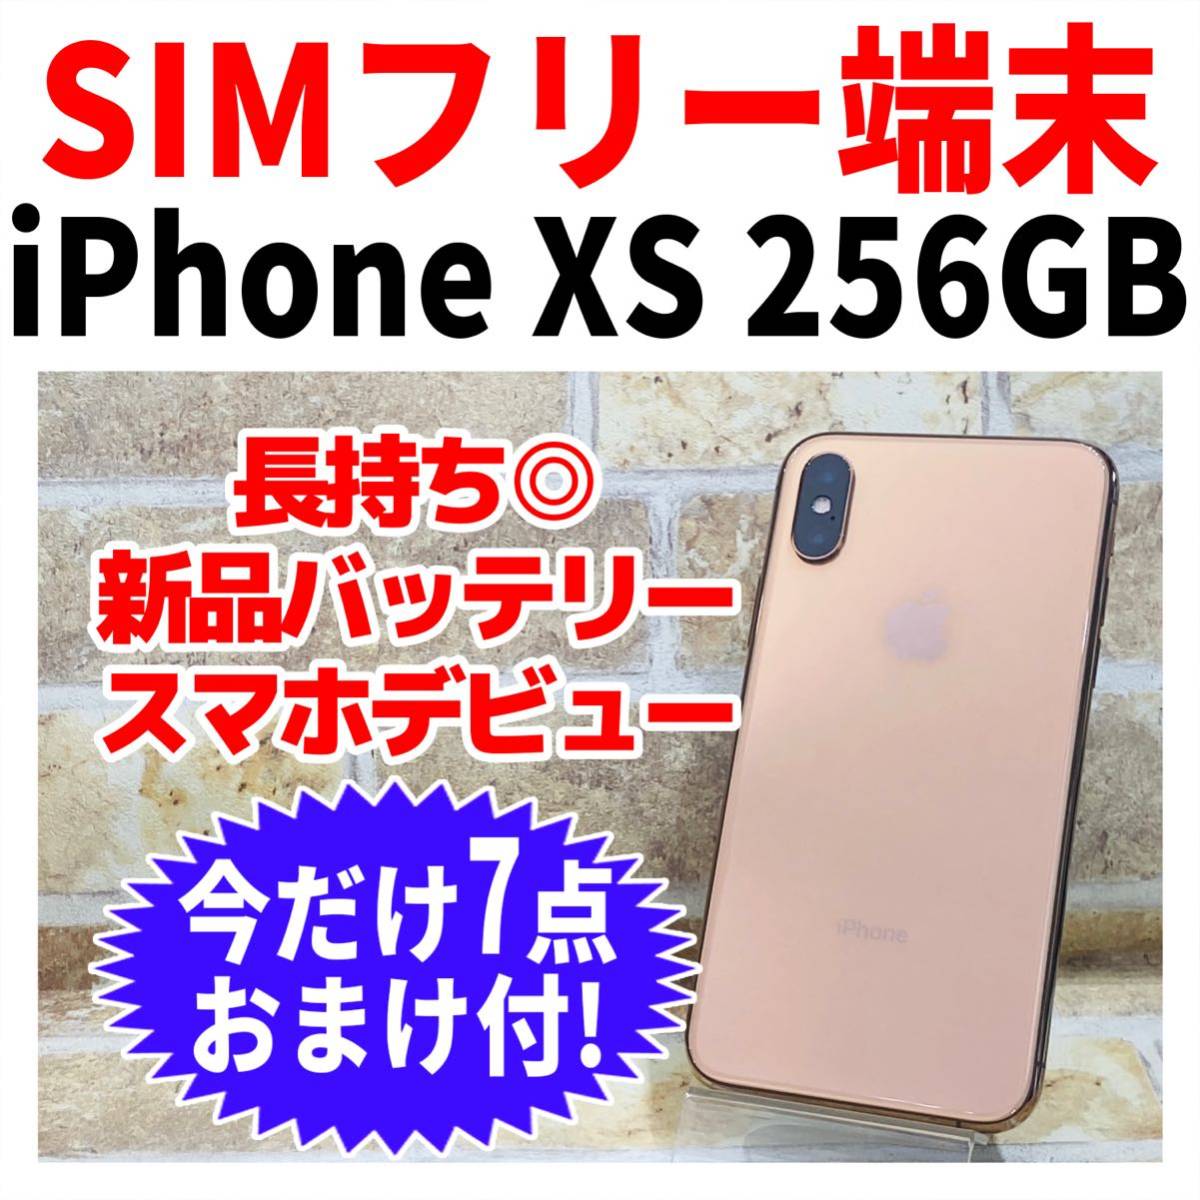 美品 SIMフリー iPhone XS 256GB ゴールド 新品バッテリー-